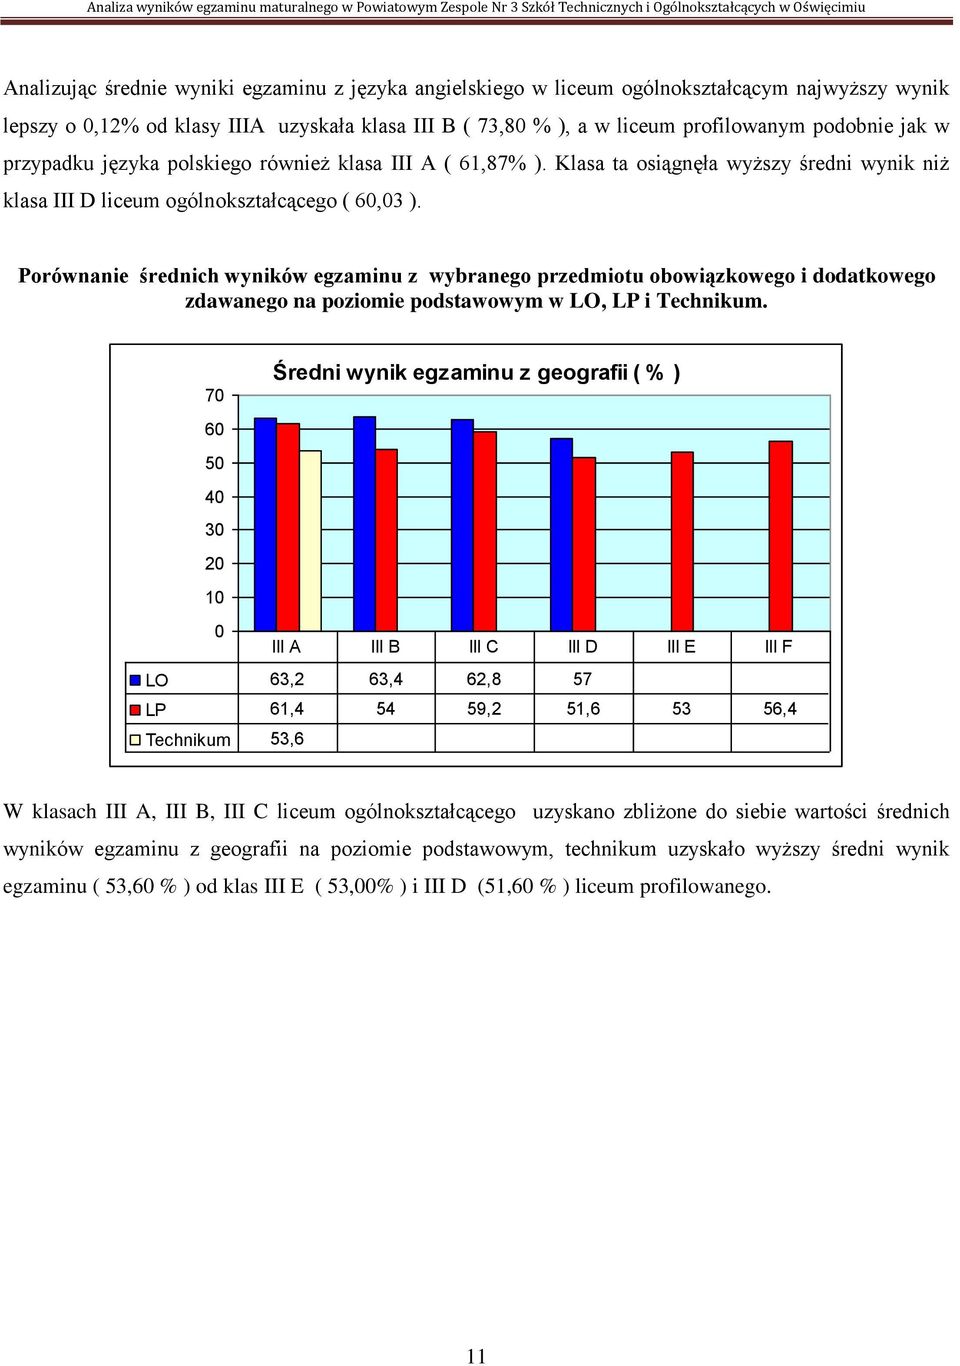 Porównanie średnich wyników egzaminu z wybranego przedmiotu obowiązkowego i dodatkowego zdawanego na poziomie podstawowym w LO, LP i Technikum.